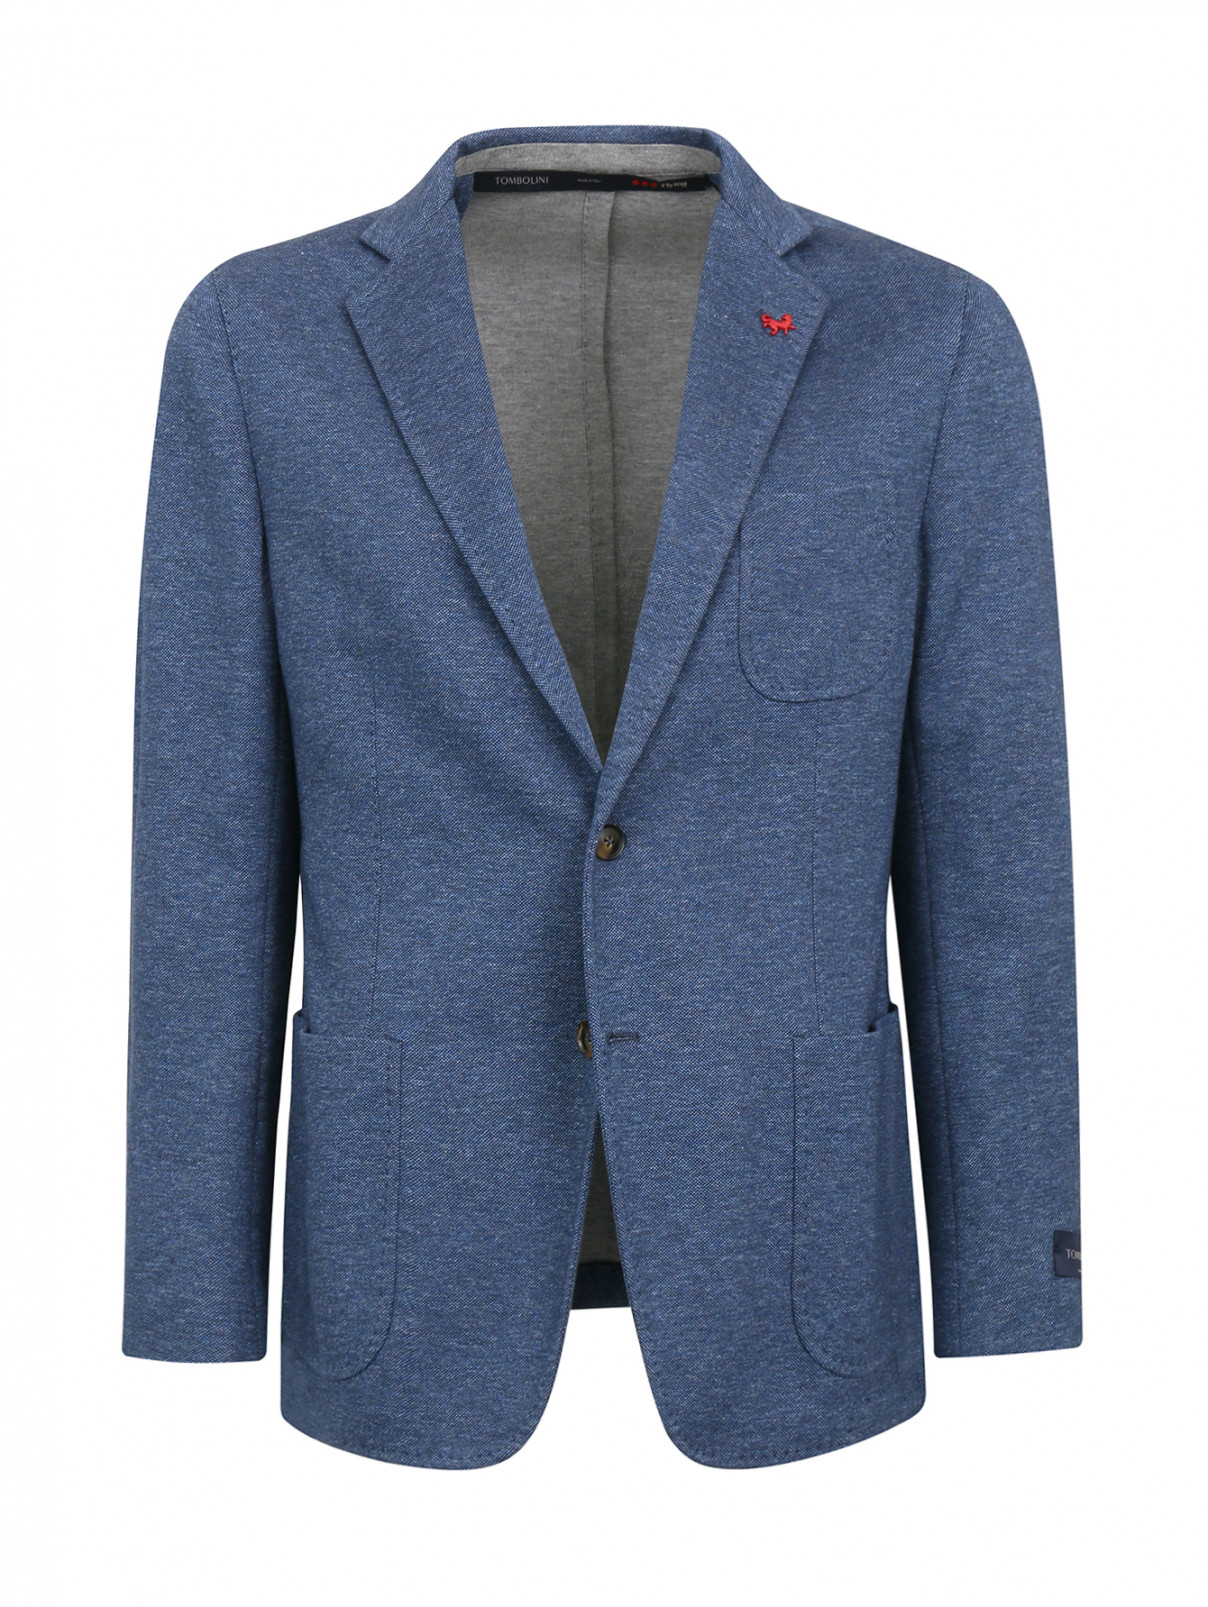 Однобортный пиджак из хлопка с заплатками Tombolini  –  Общий вид  – Цвет:  Синий